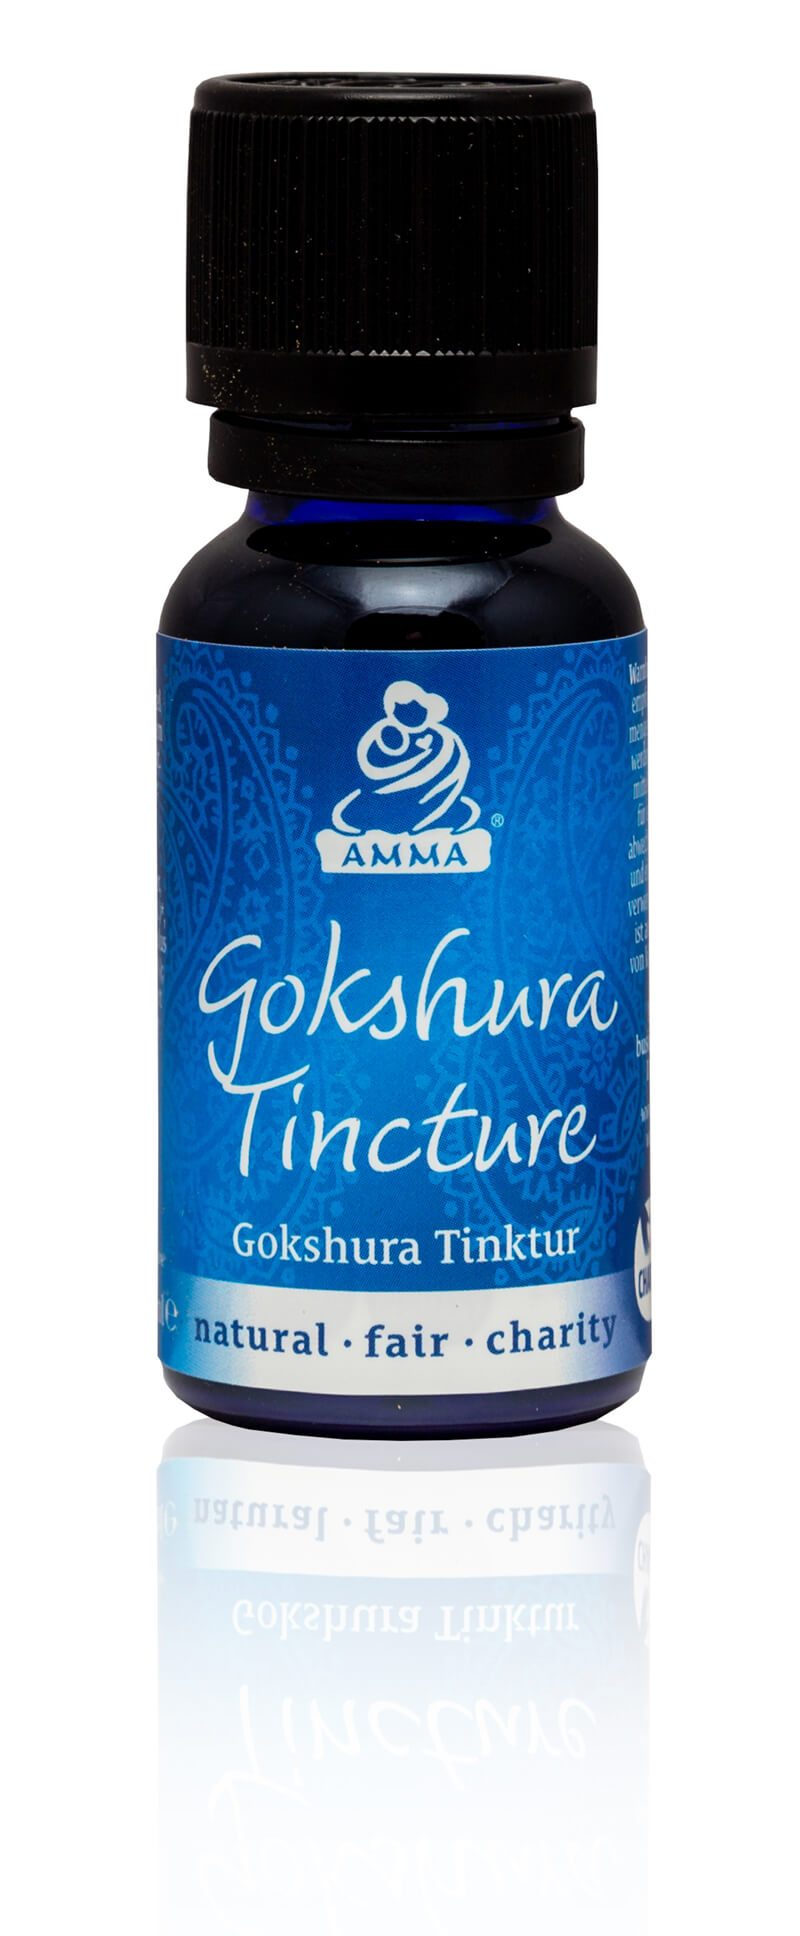 Gokshura Tincture, organic